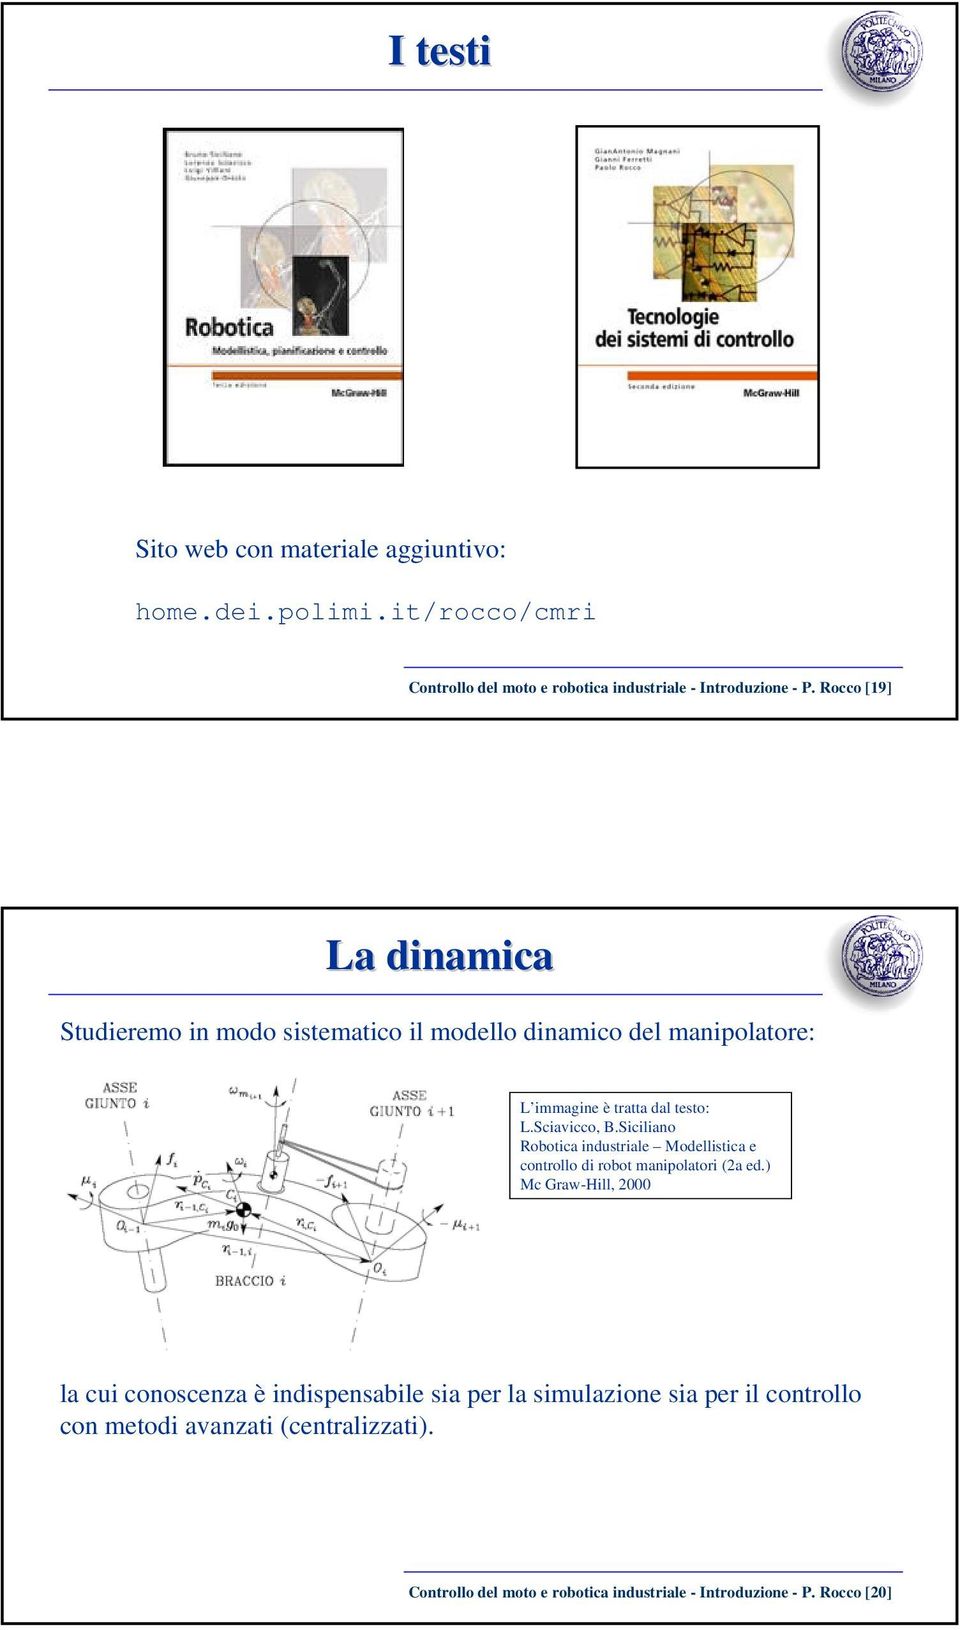 Siciliano Robotica industriale Modellistica e controllo di robot manipolatori (2a ed.